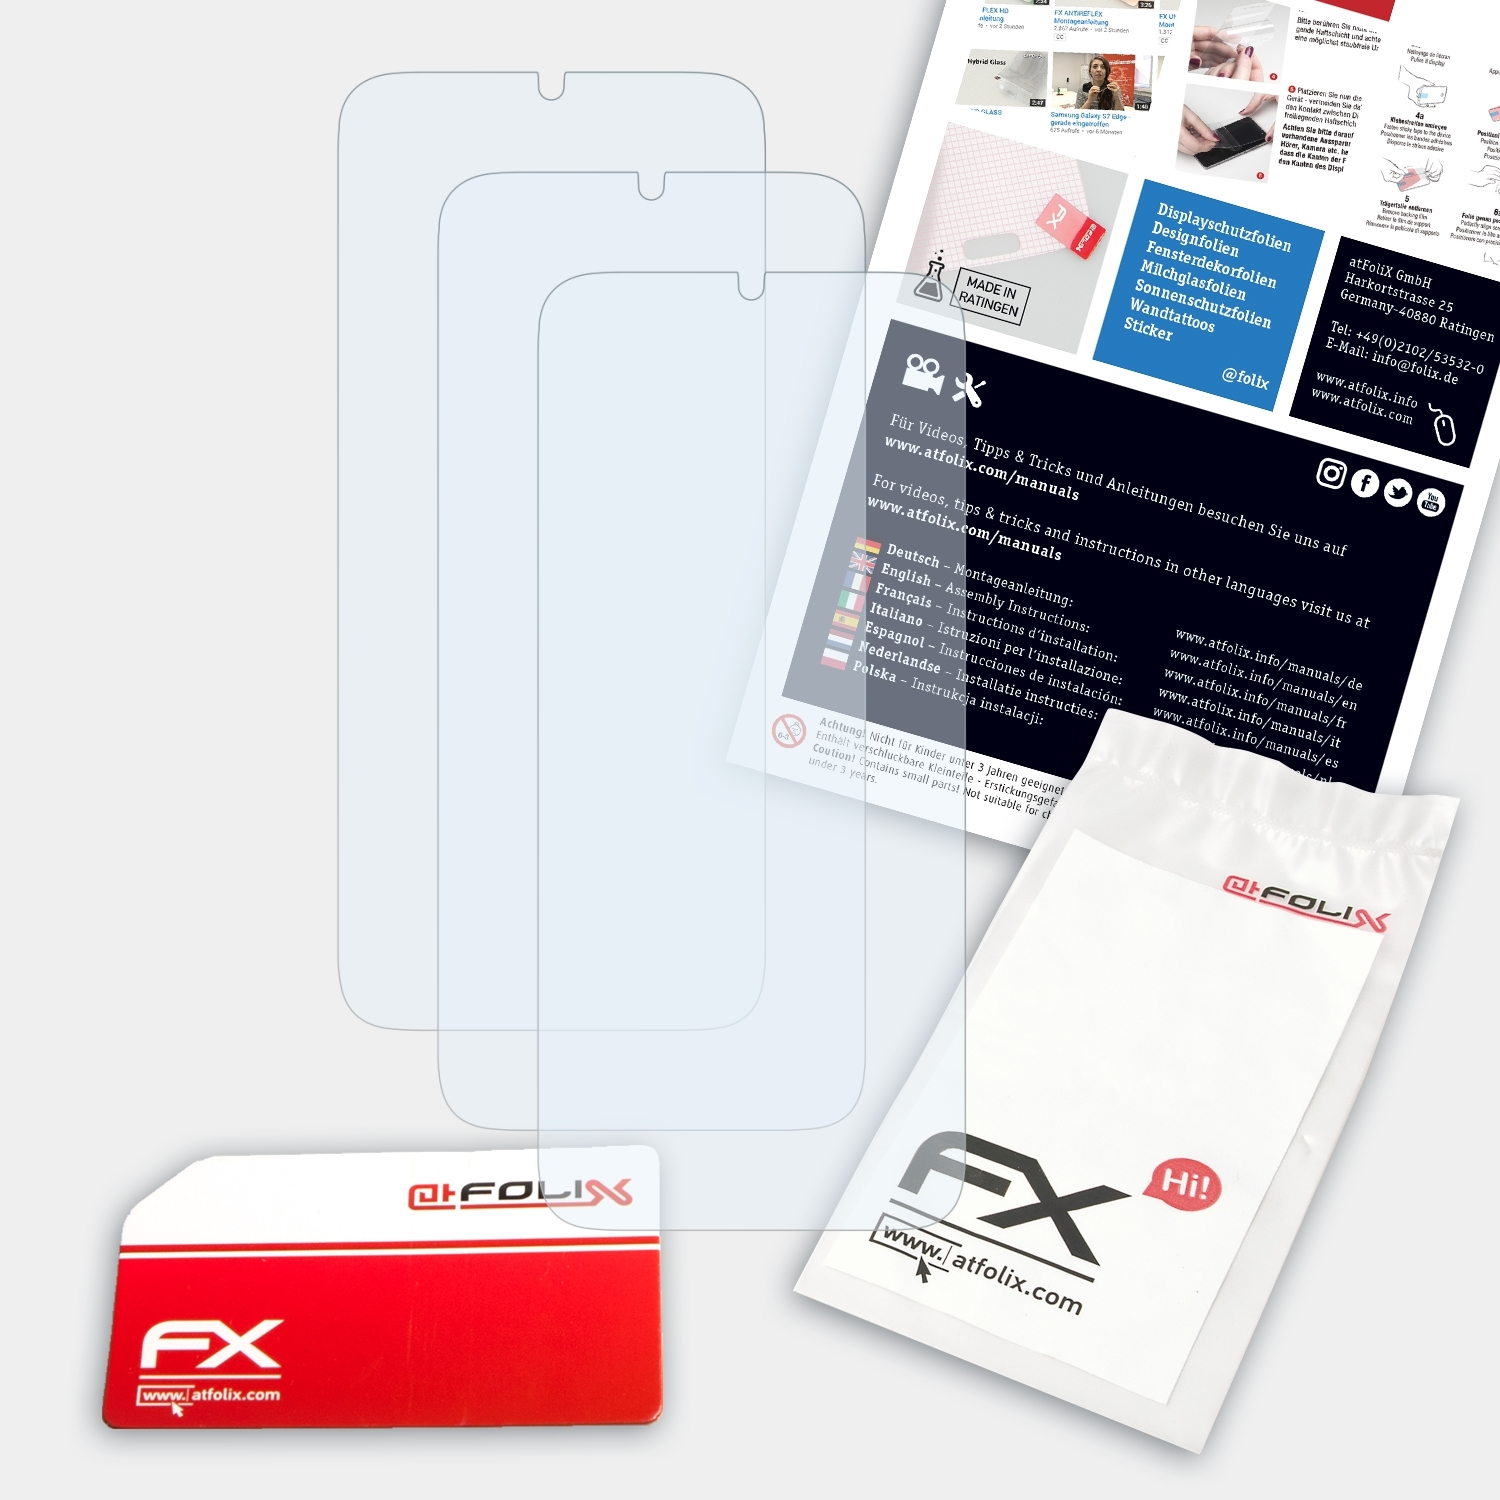 ATFOLIX 3x Motorola FX-Clear One Zoom) Displayschutz(für